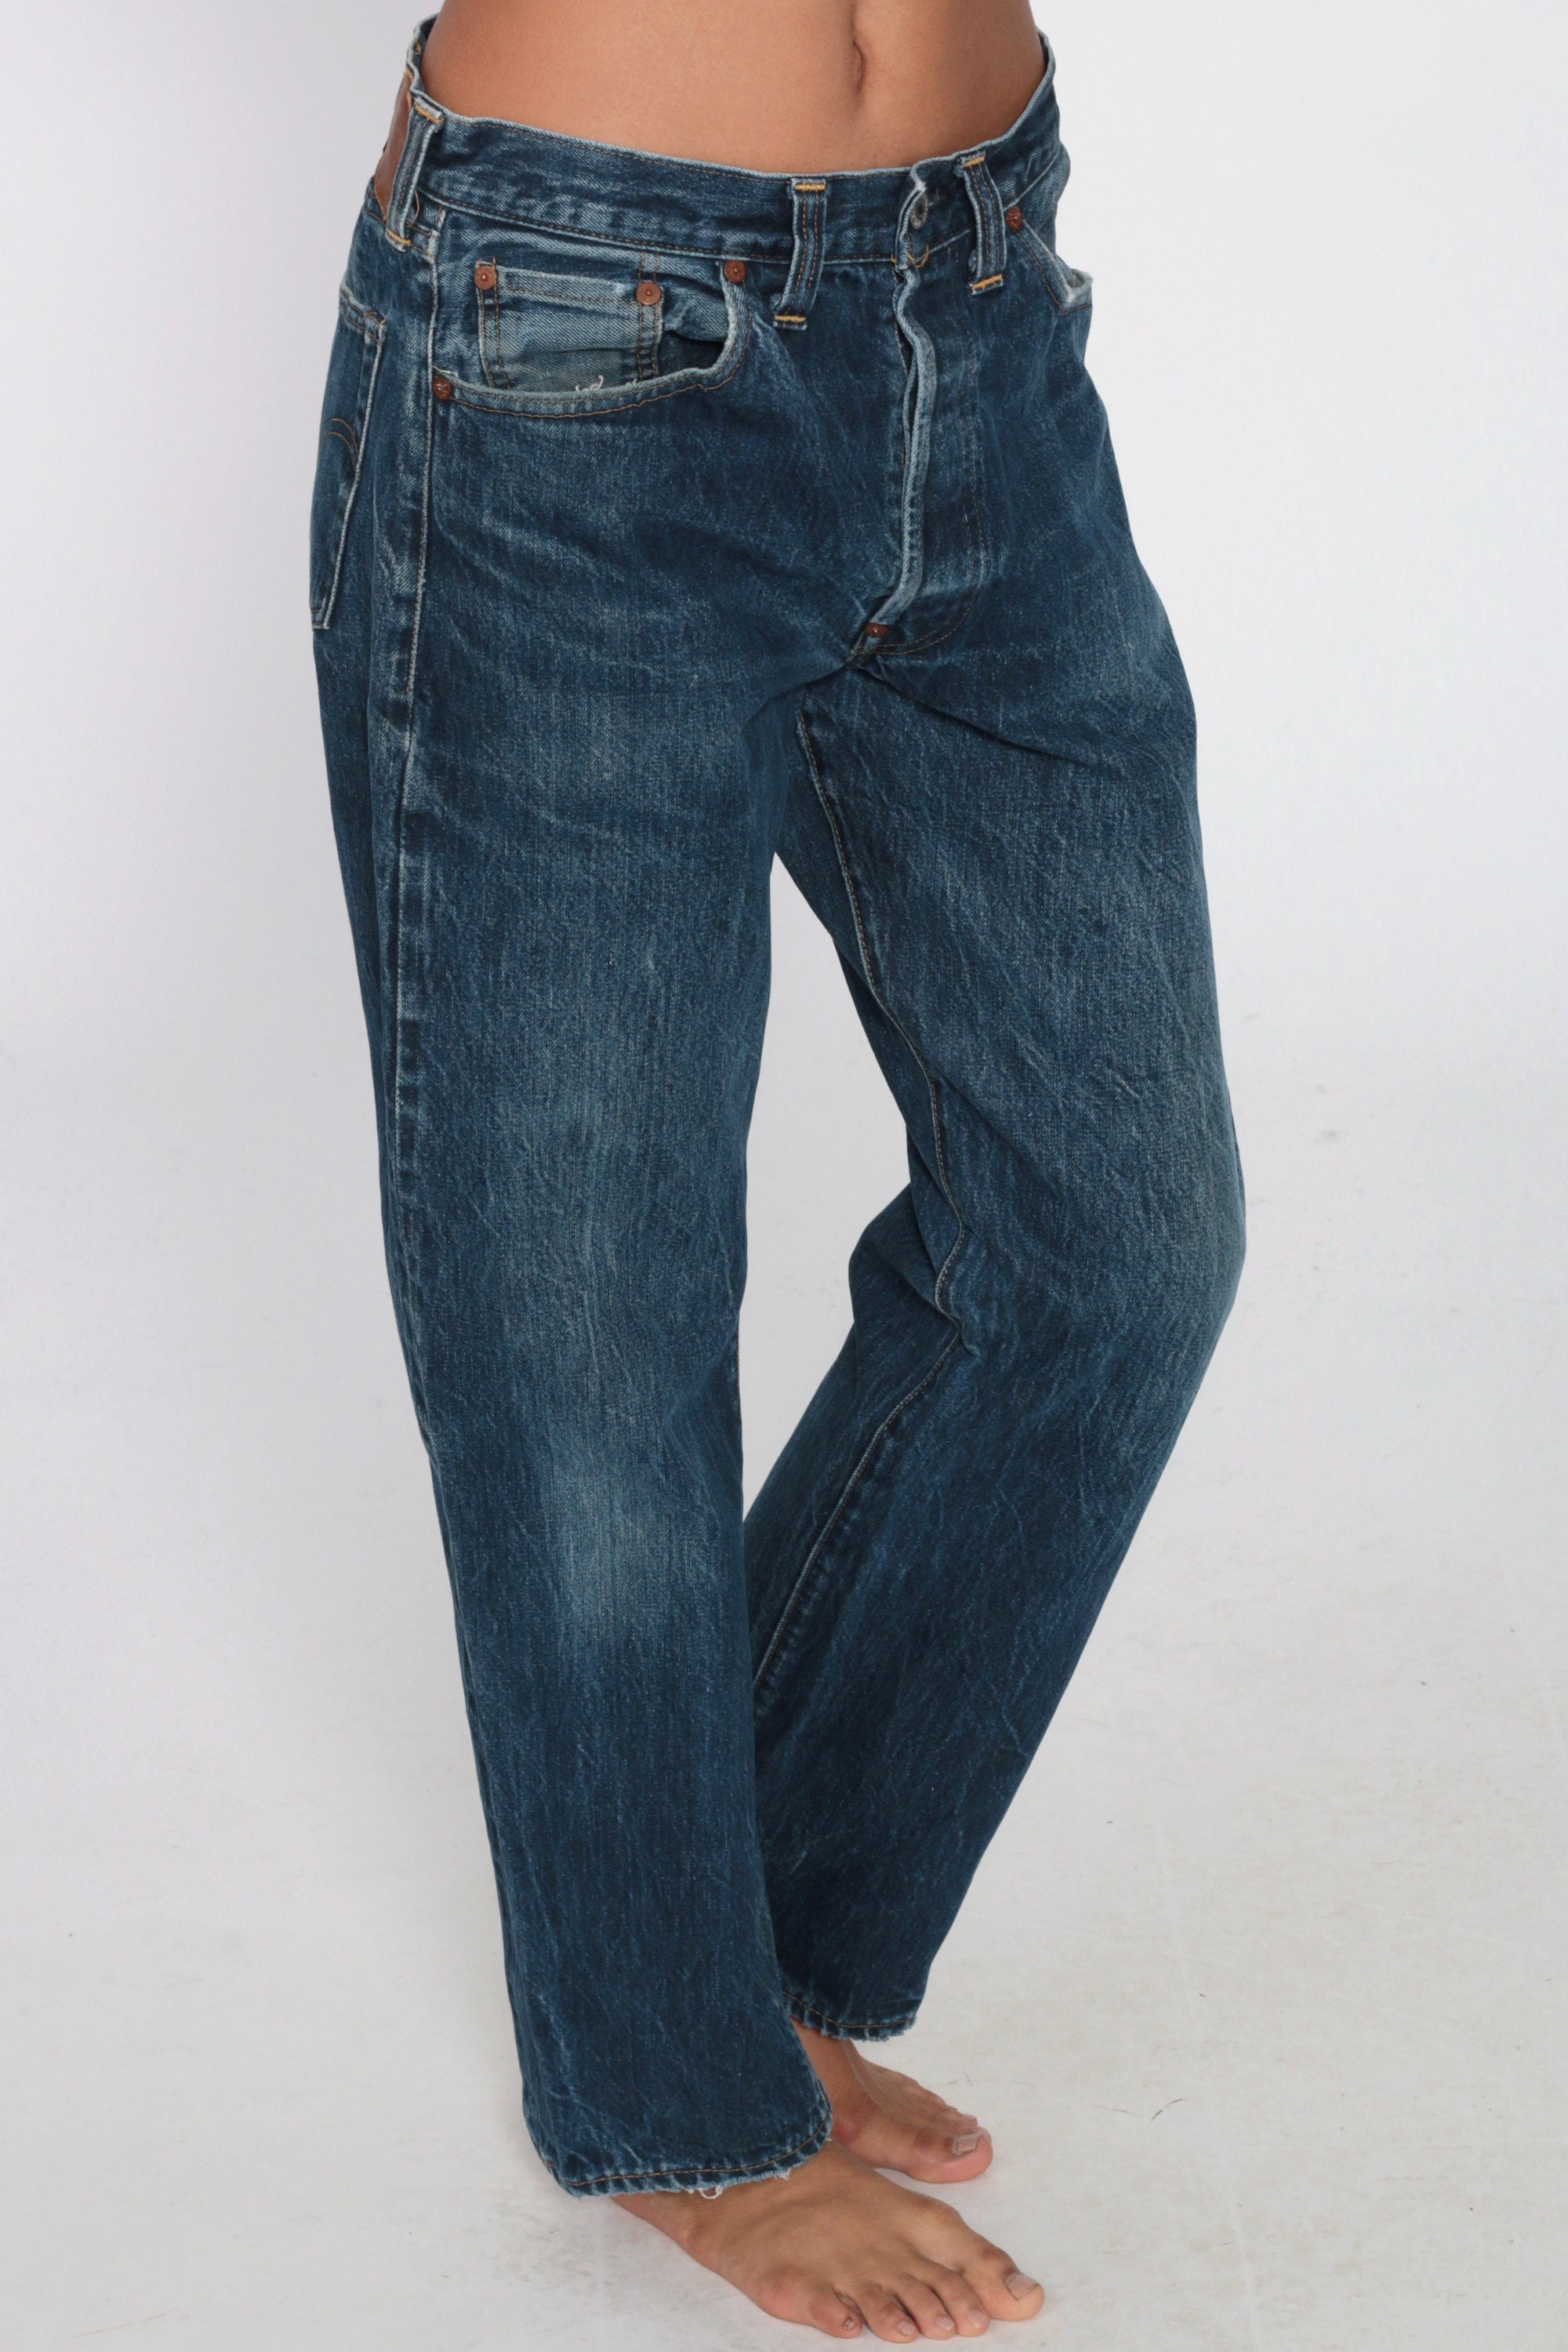 80s Levis Jeans 32 Boyfriend Jeans Distressed Denim Pants 1980s Blue ...